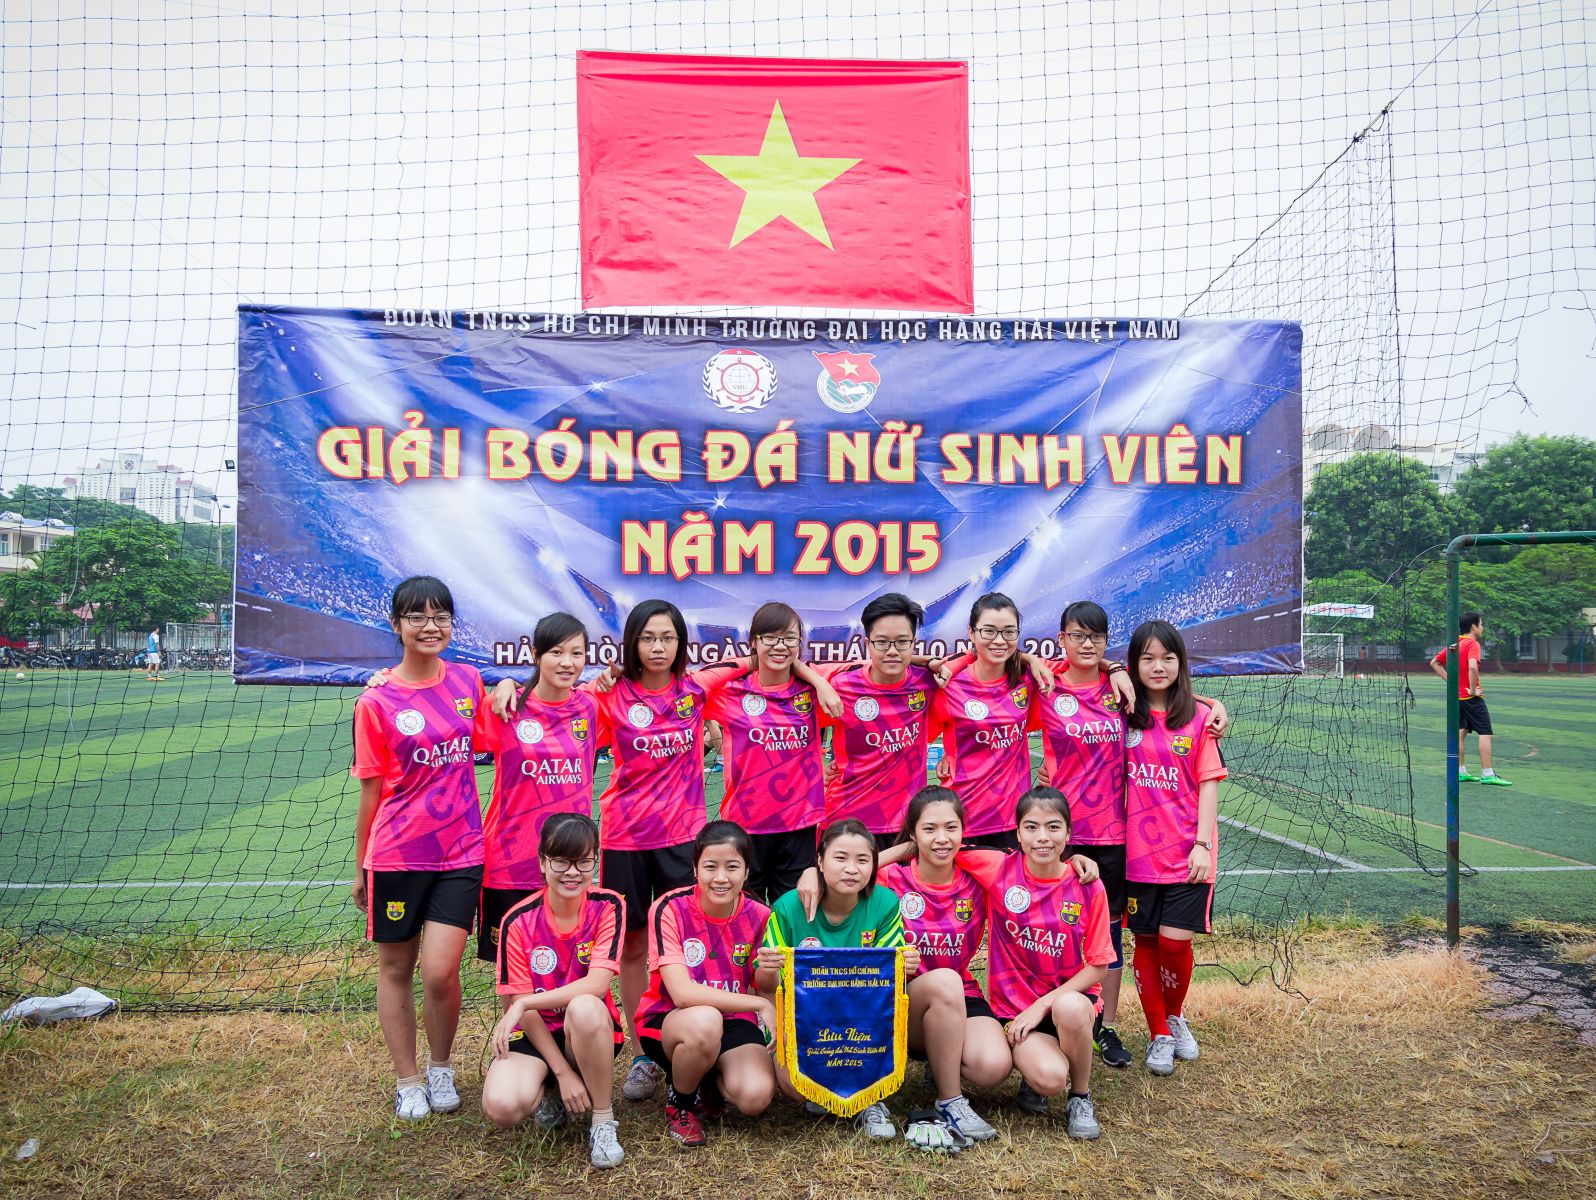 Khai mạc Giải bóng đá Nữ sinh viên Đại học Hàng hải năm 2015 - ảnh 7